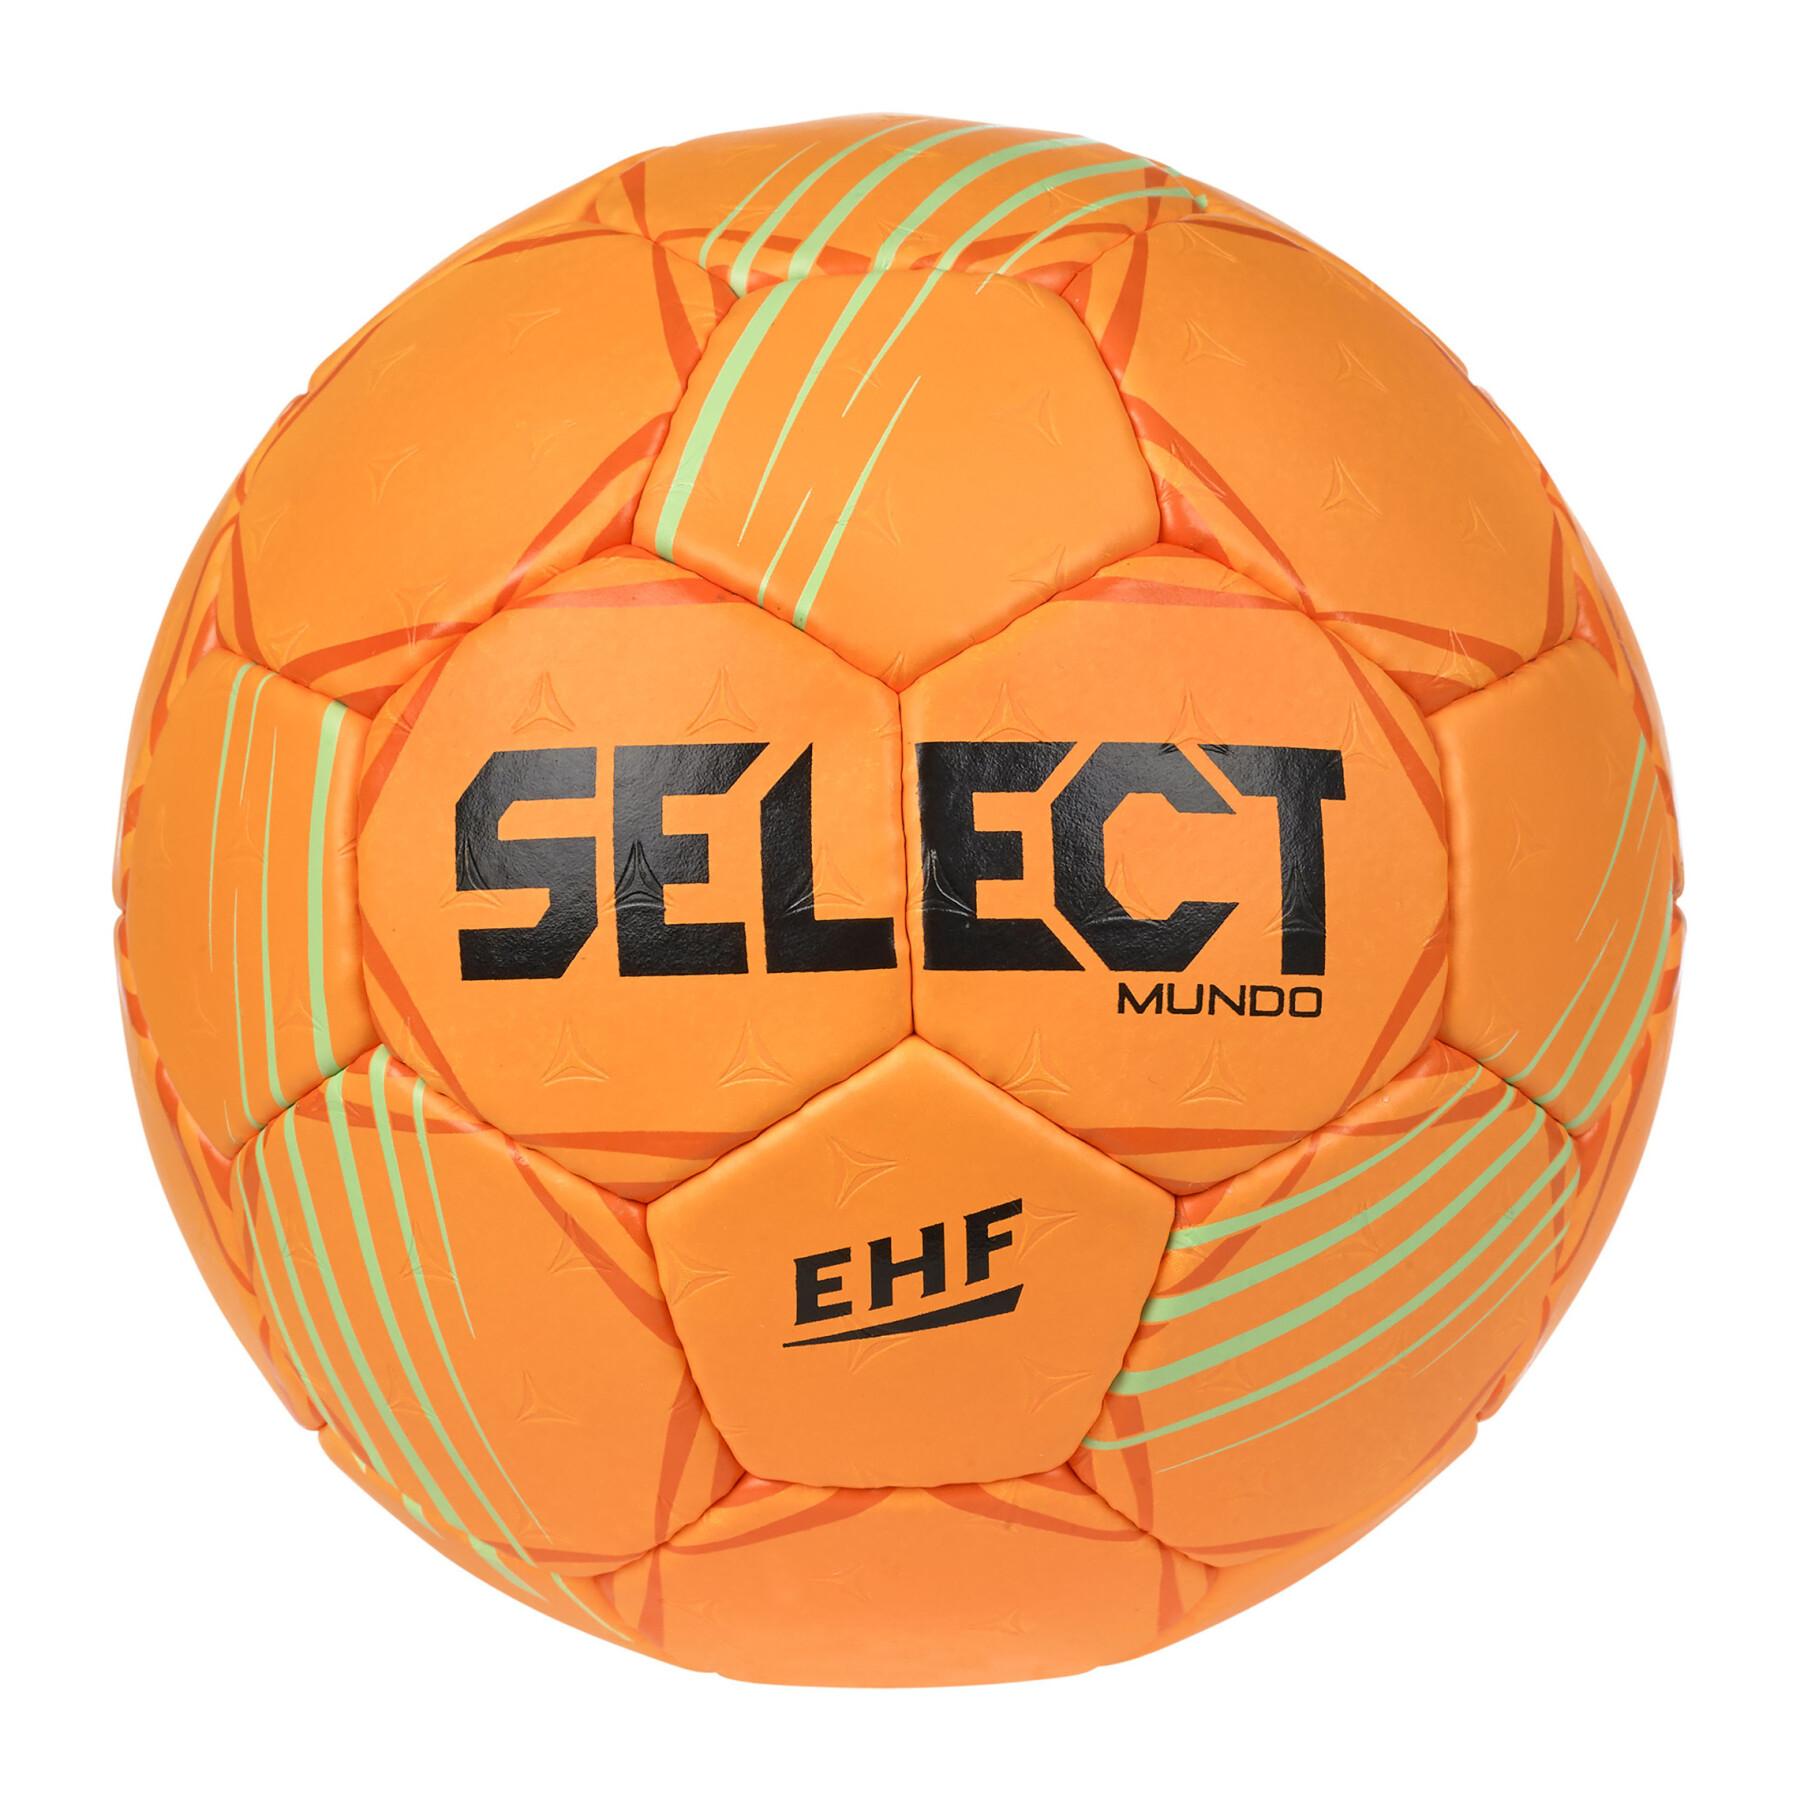 Ballon Select Mundo V22